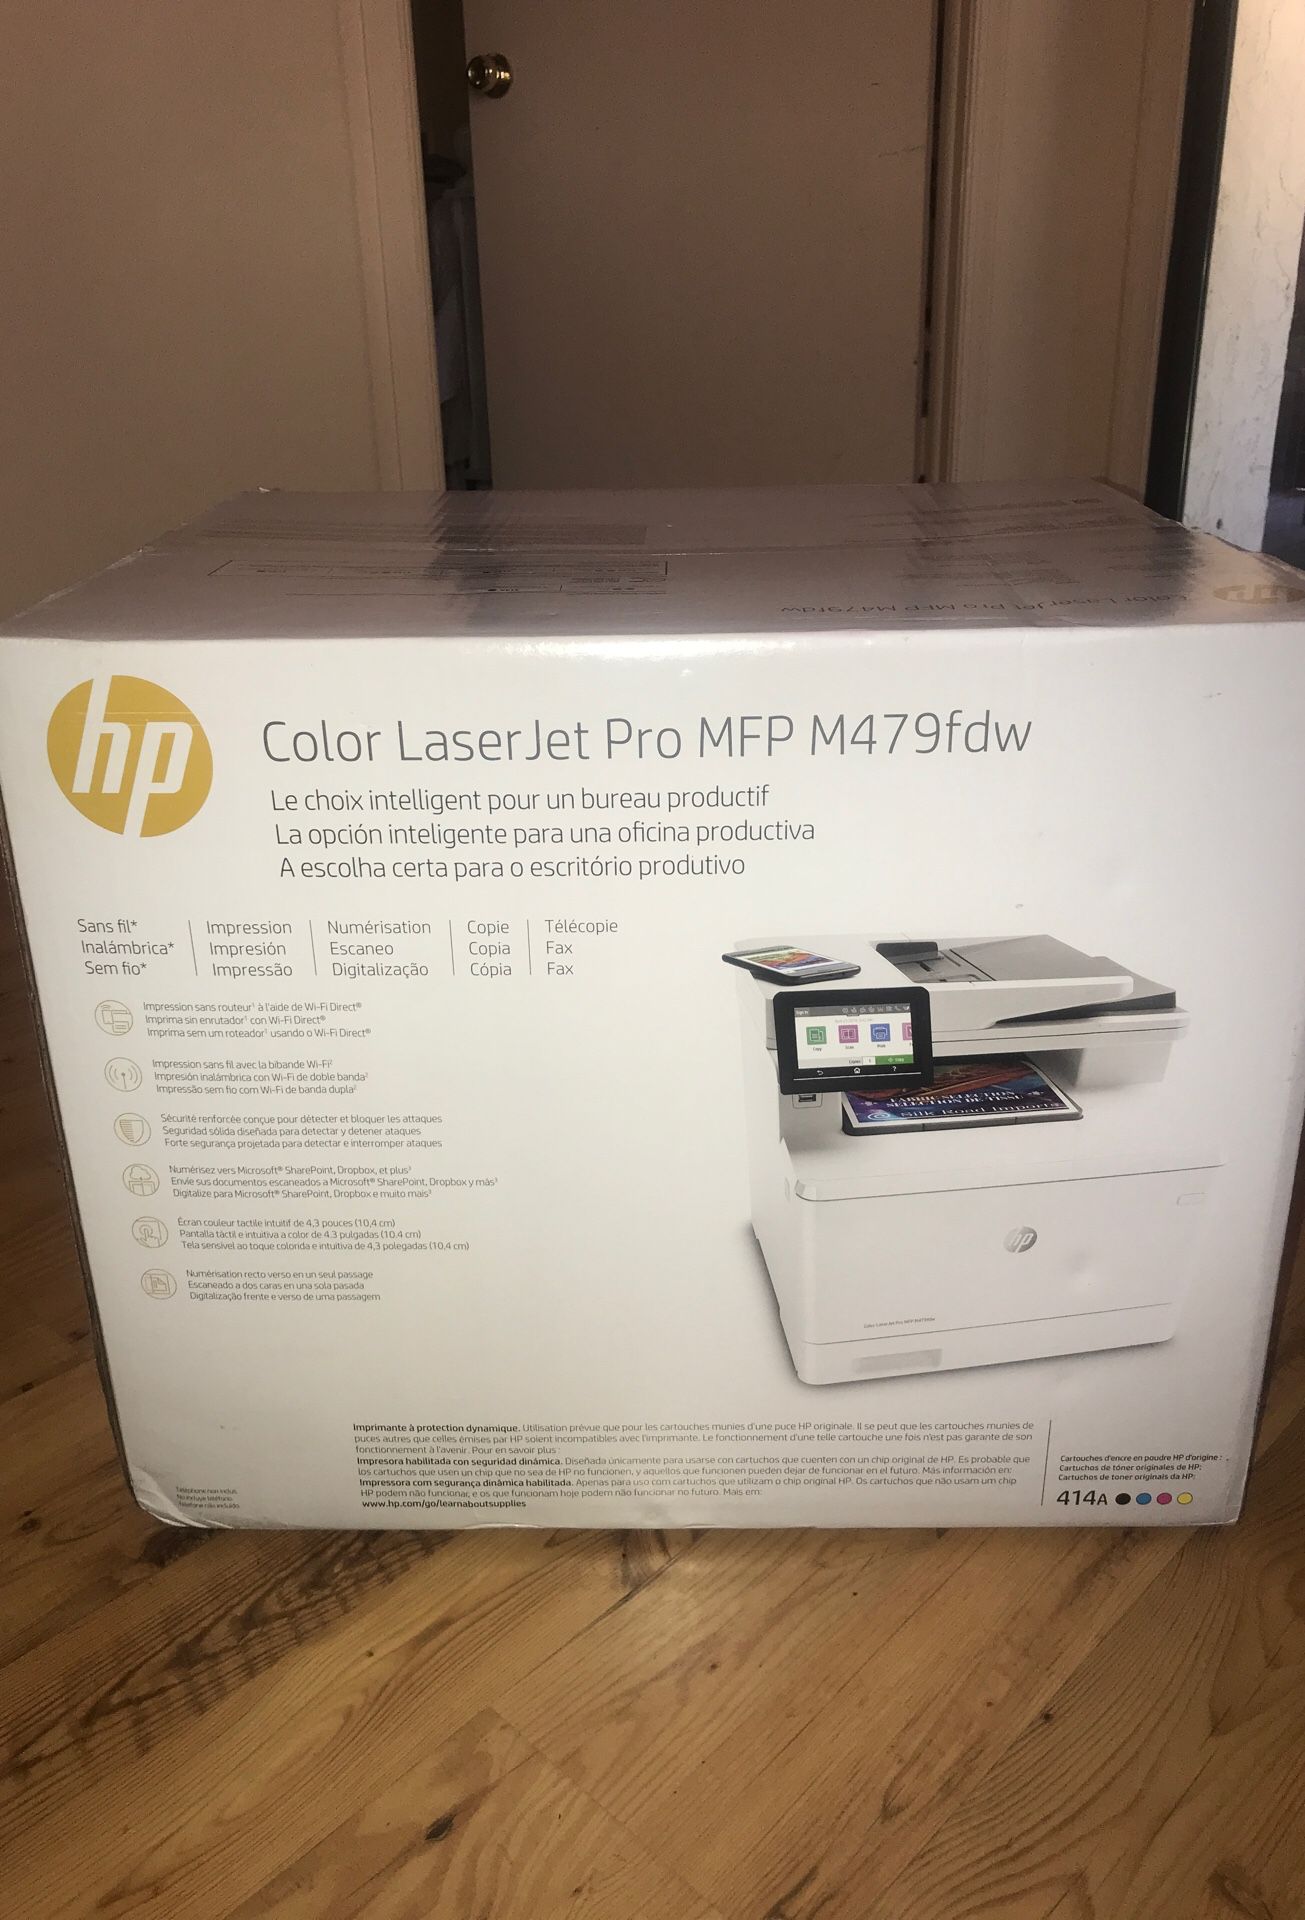 HP Color Laser Jet Pro MFP M479fdw